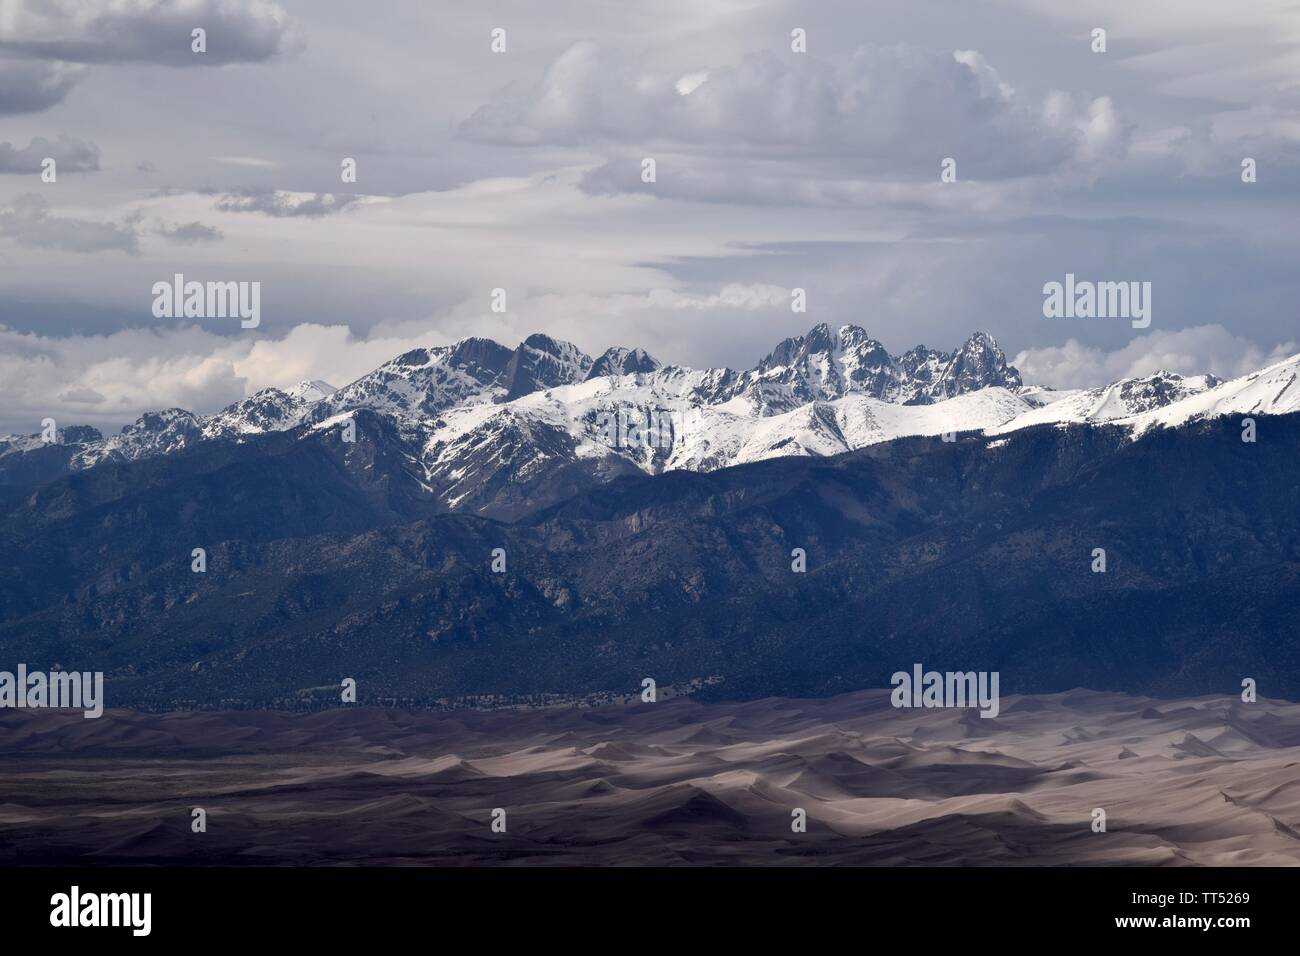 La chaîne de montagnes de la Crestone Colorado Rockies qui pèse sur Great Sand Dunes National Park. Banque D'Images